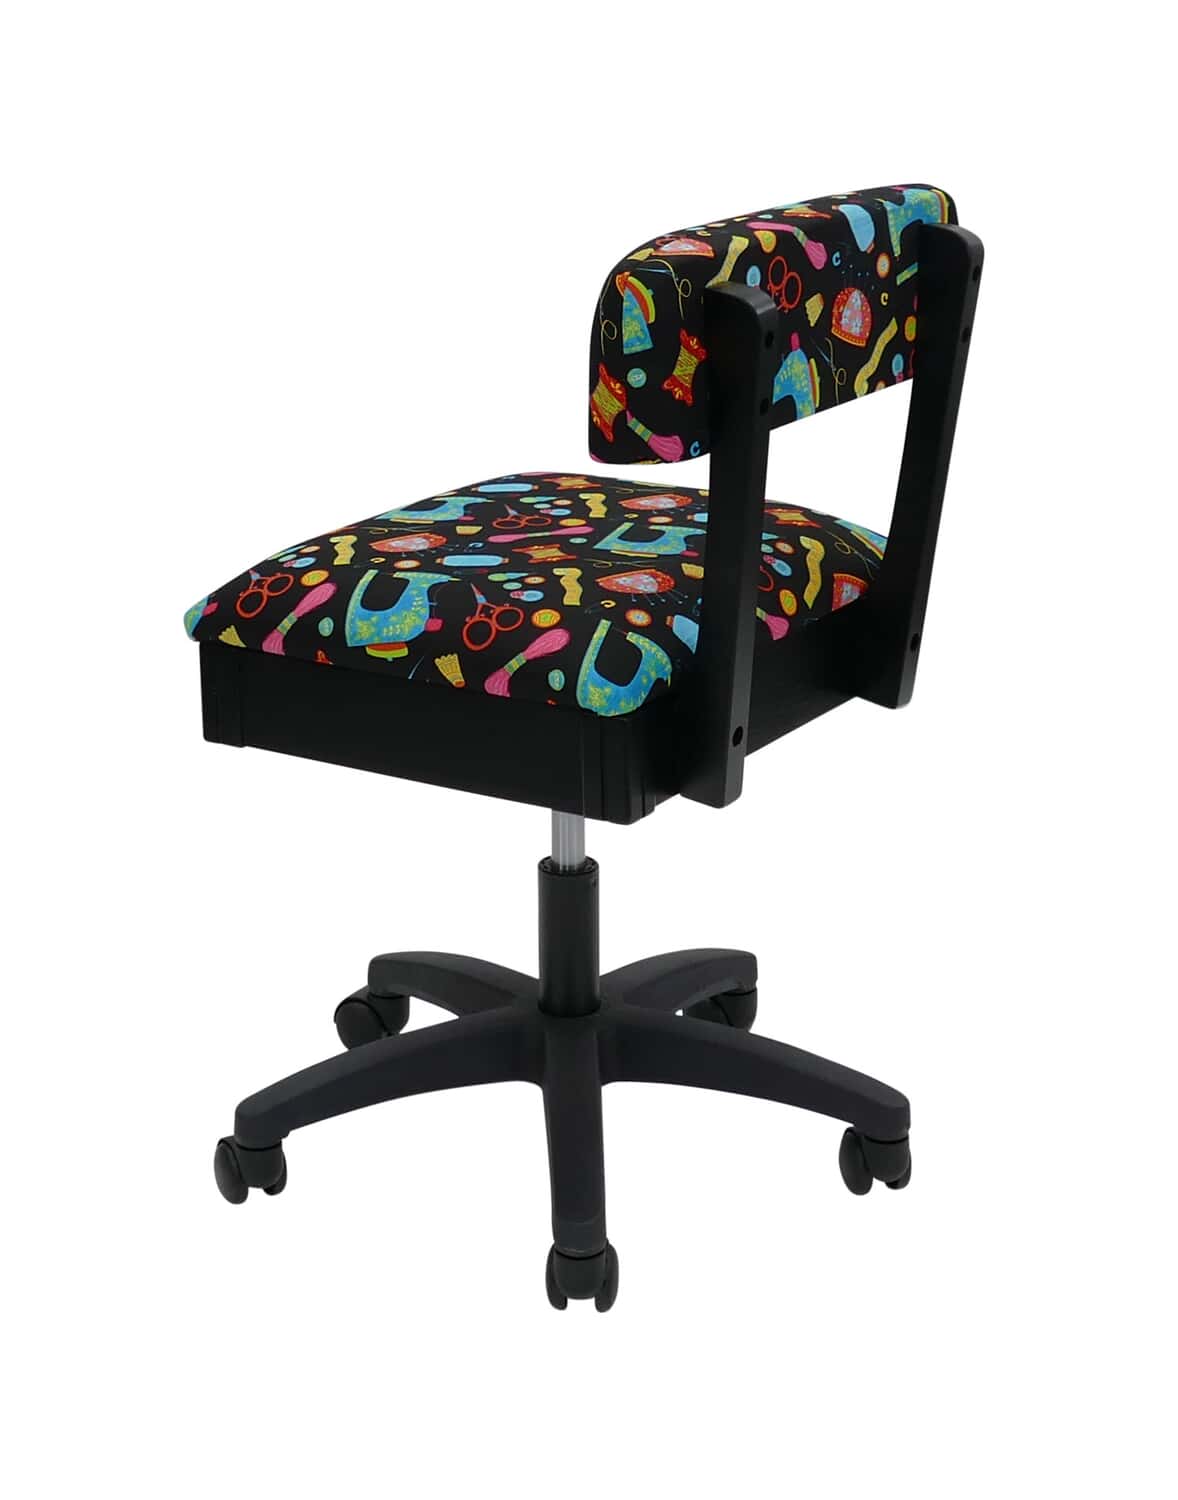 Arrow Duchess Blue Hydraulic Sewing Chair